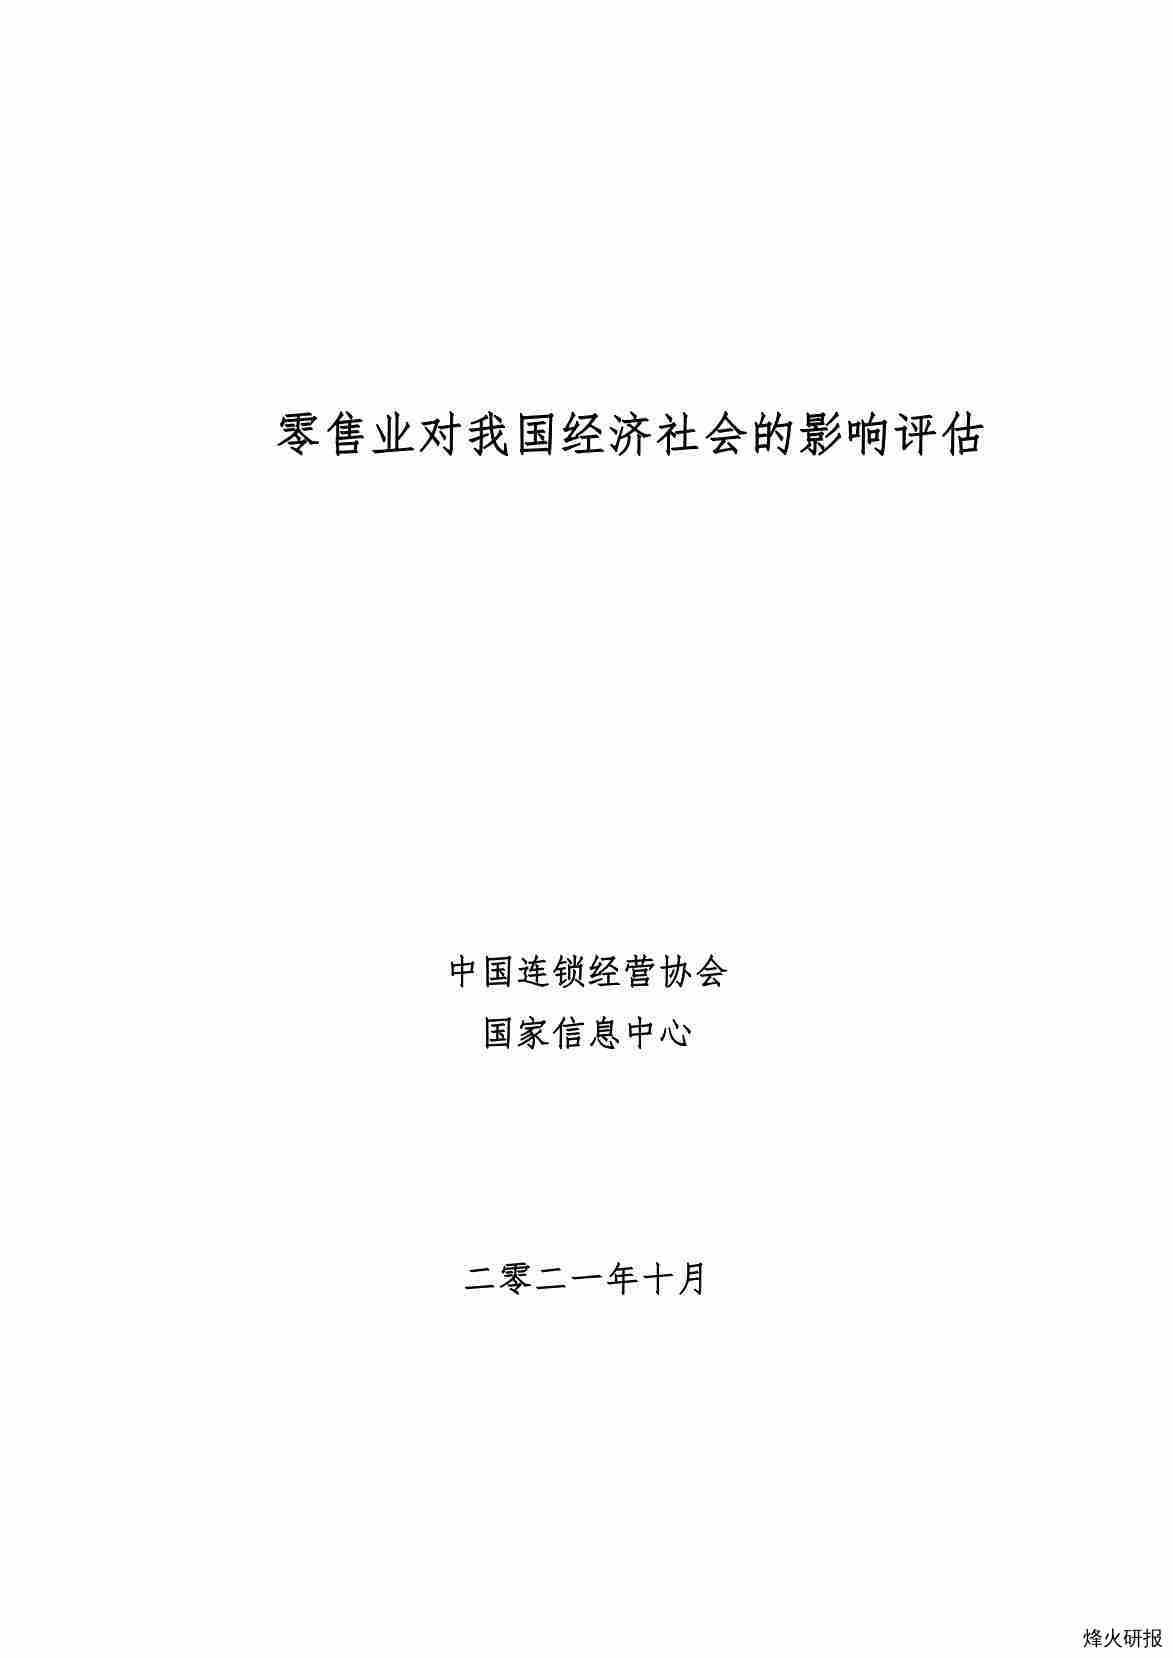 【中国连锁经营协会】Final-零售业对经济社会的影响评估-211111.pdf-第一页